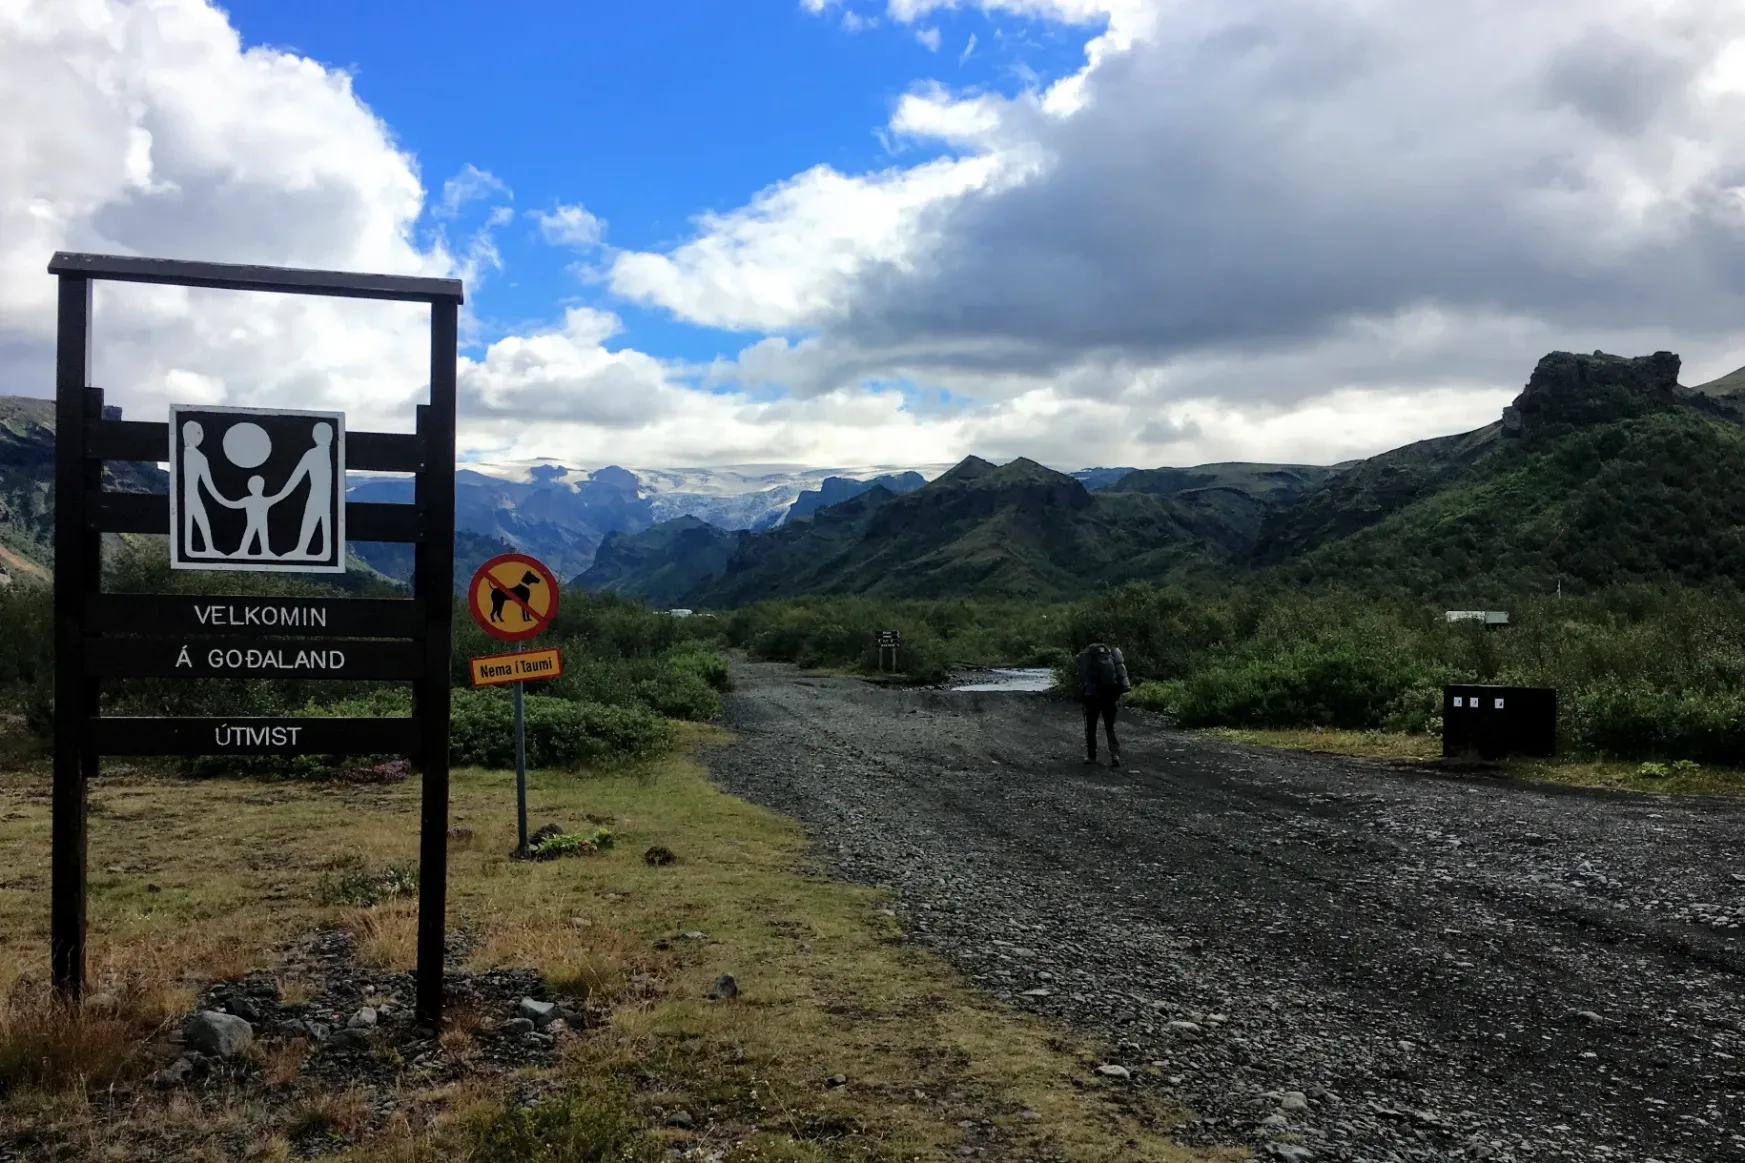 Izland legszebb túrája: folytatás az Istenek földjén